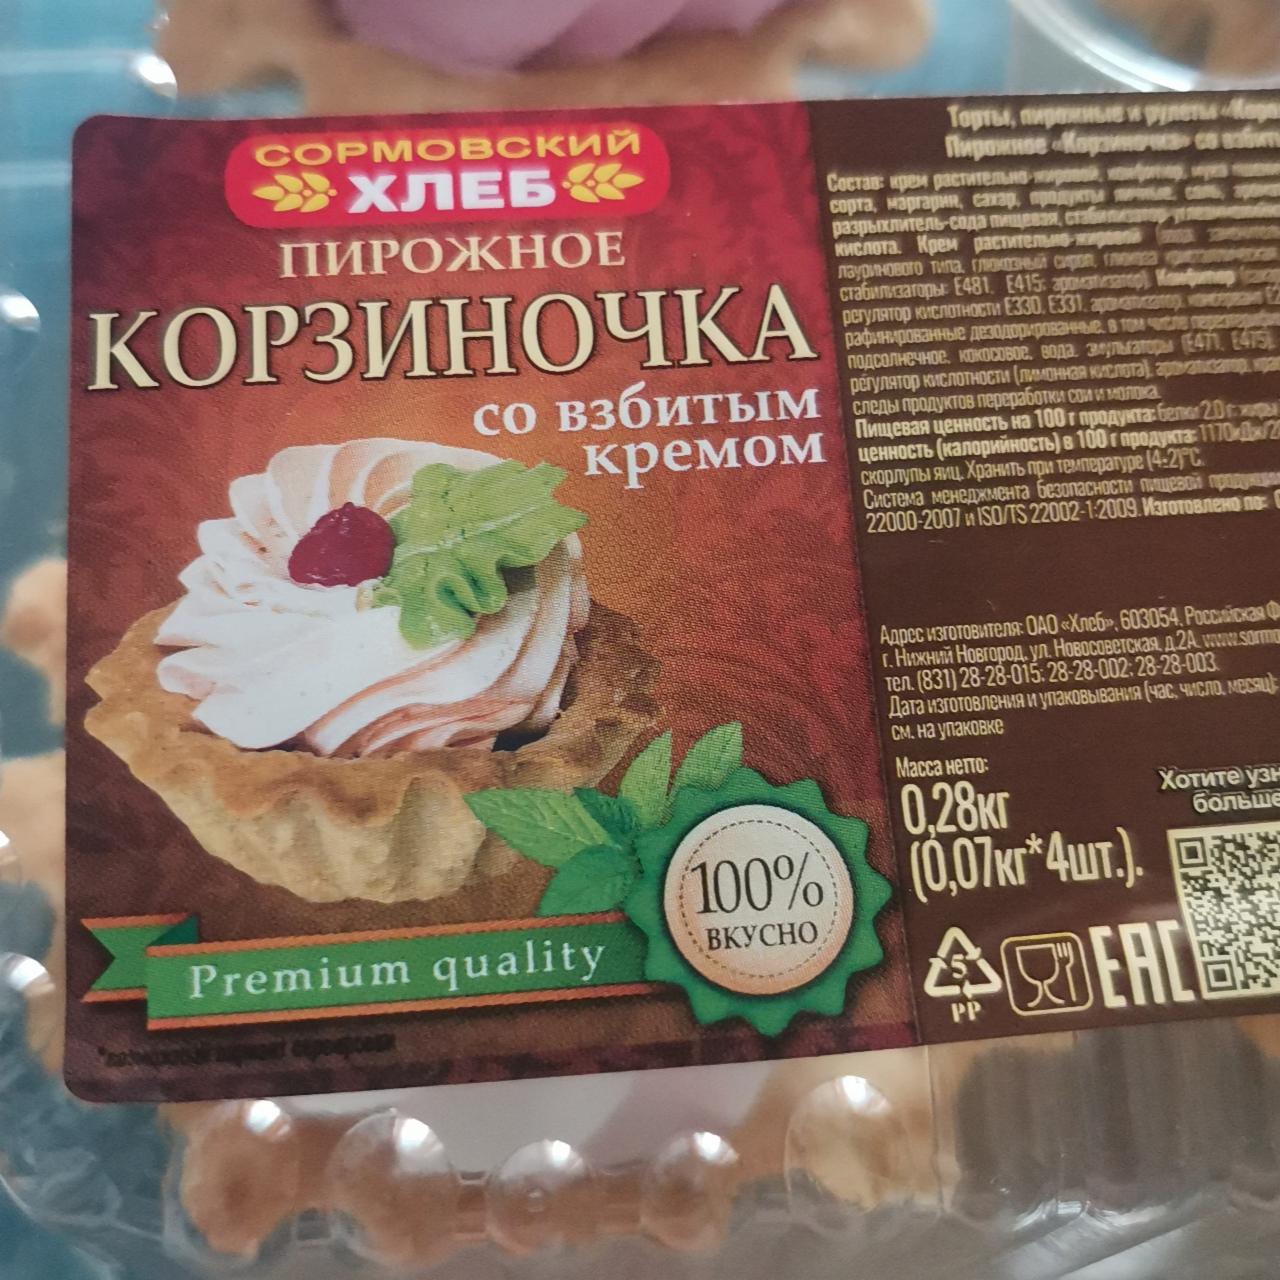 Фото - Пирожное корзиночка со взбитым кремом Сормовский хлеб